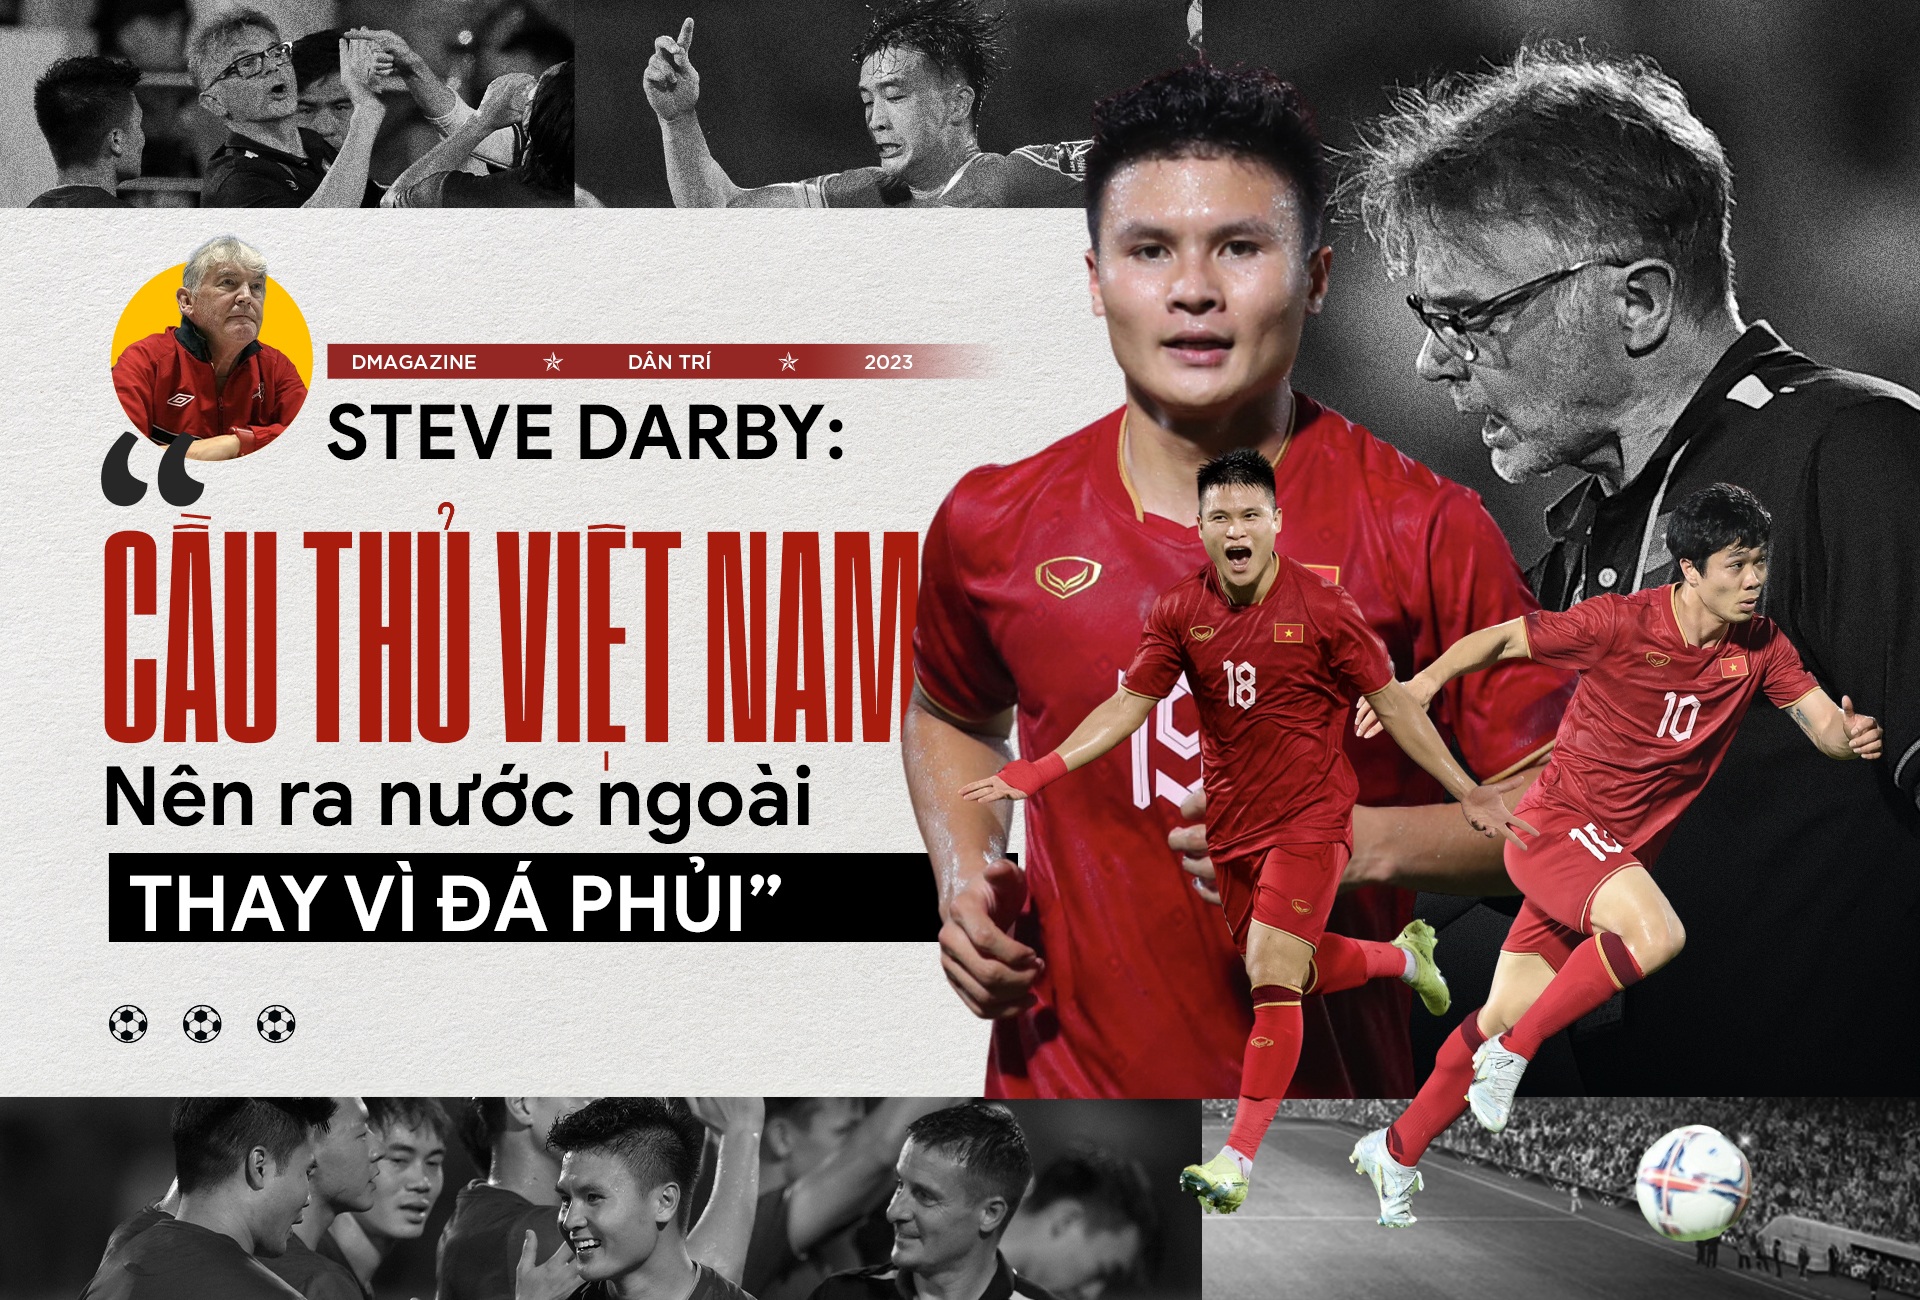 Steve Darby: "Cầu thủ Việt Nam nên ra nước ngoài thay vì đá phủi"